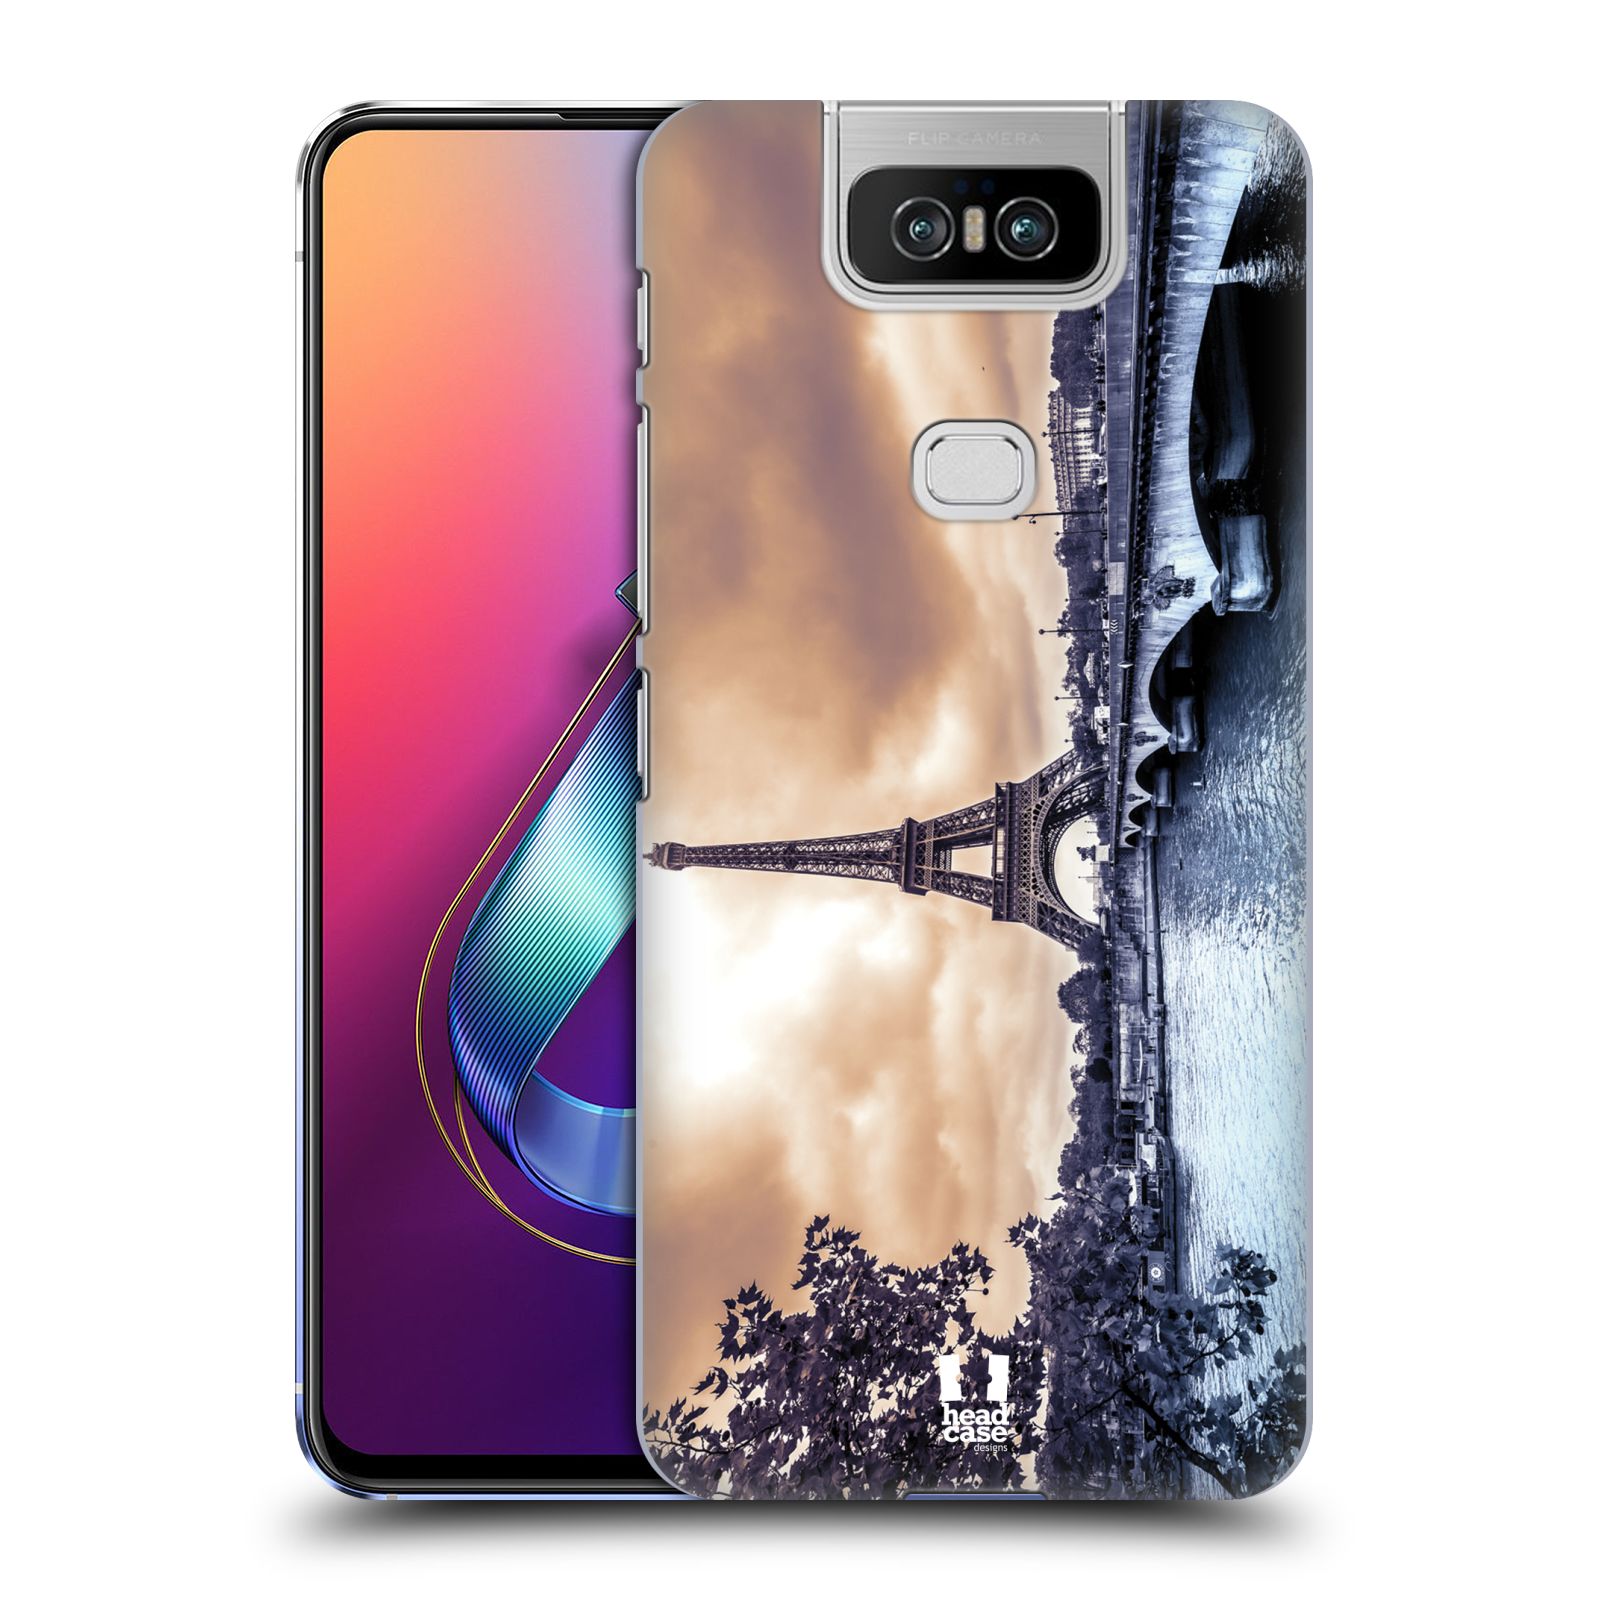 Pouzdro na mobil Asus Zenfone 6 ZS630KL - HEAD CASE - vzor Panoramata měst horizontální foto DEŠTIVÝ DEN V PAŘÍŽI, FRANCIE